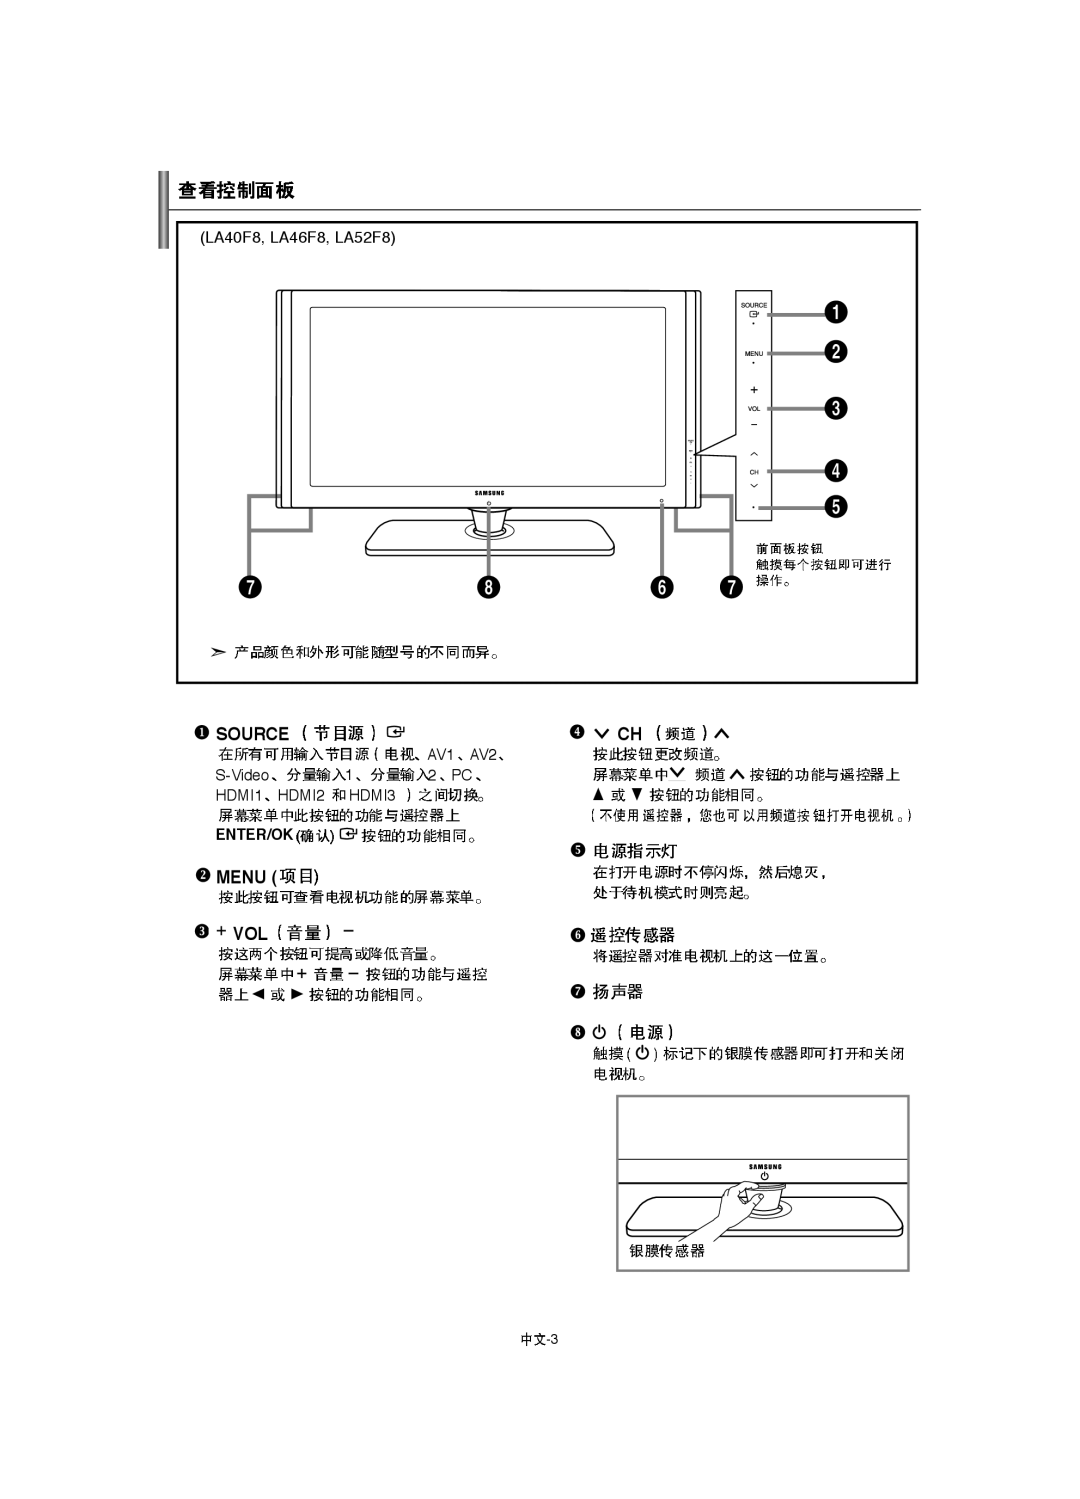 Samsung LA40F8, LA52F8, LA46F8 manual Source, Menu Vol,  , Enter/Ok 